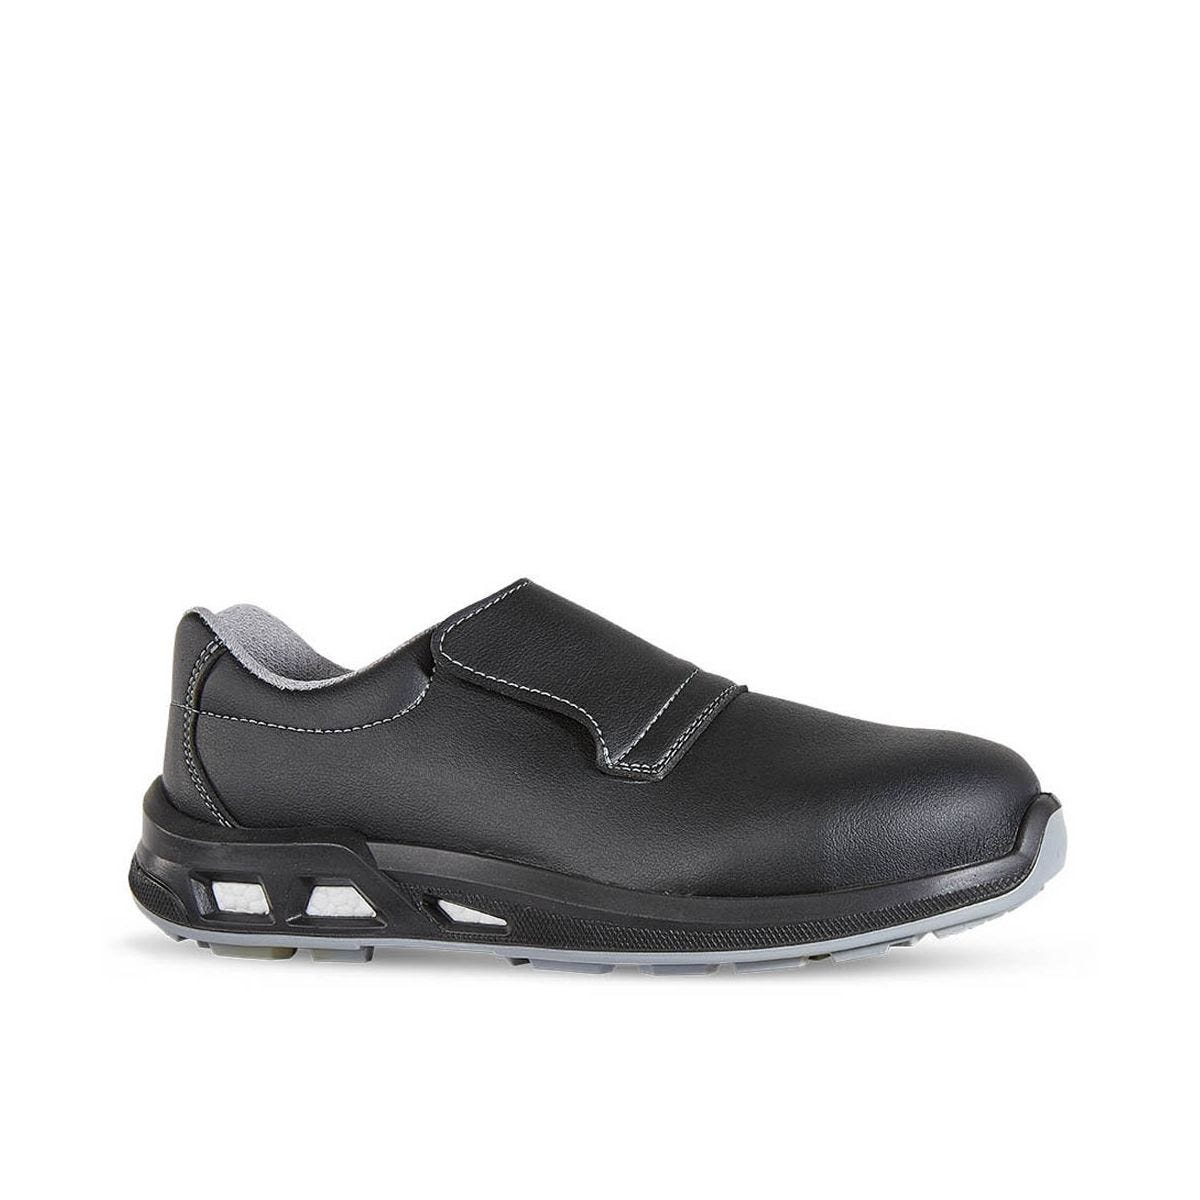 Chaussures de sécurité basses JALCARBO S3 - JALLATTE - Taille 37 0